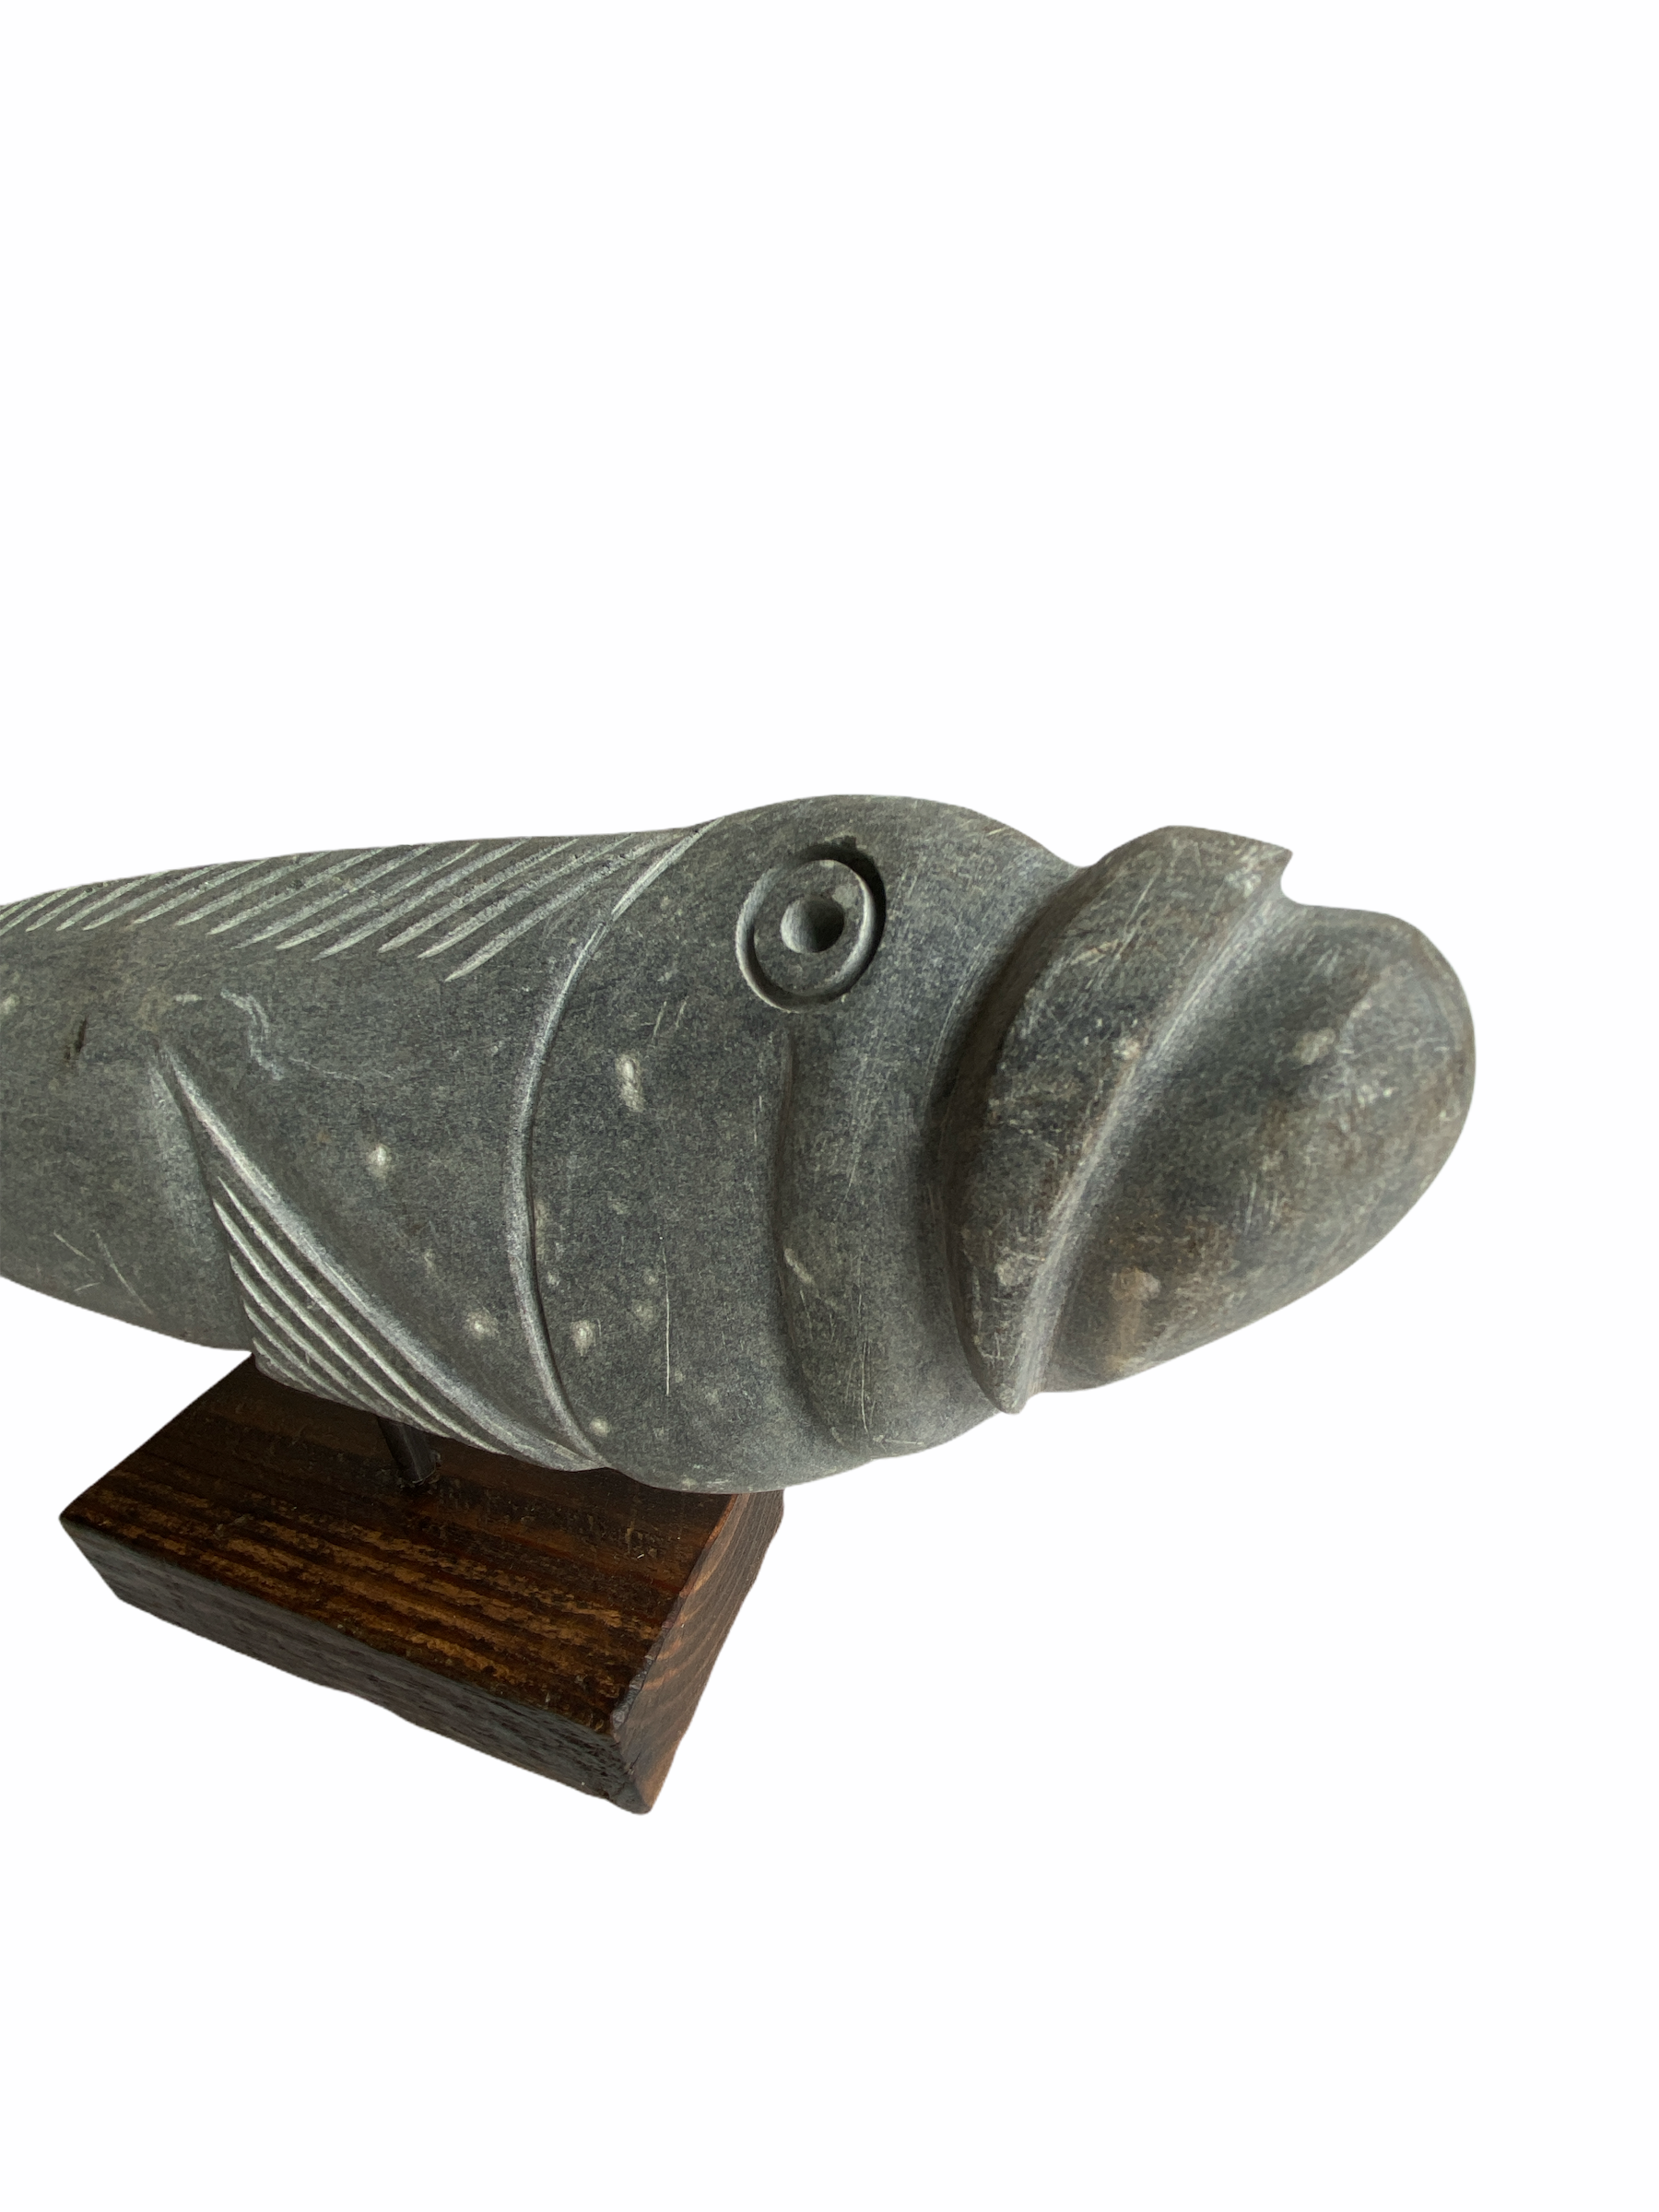 Stone Fish Sculpture - Zimbabwe (06)